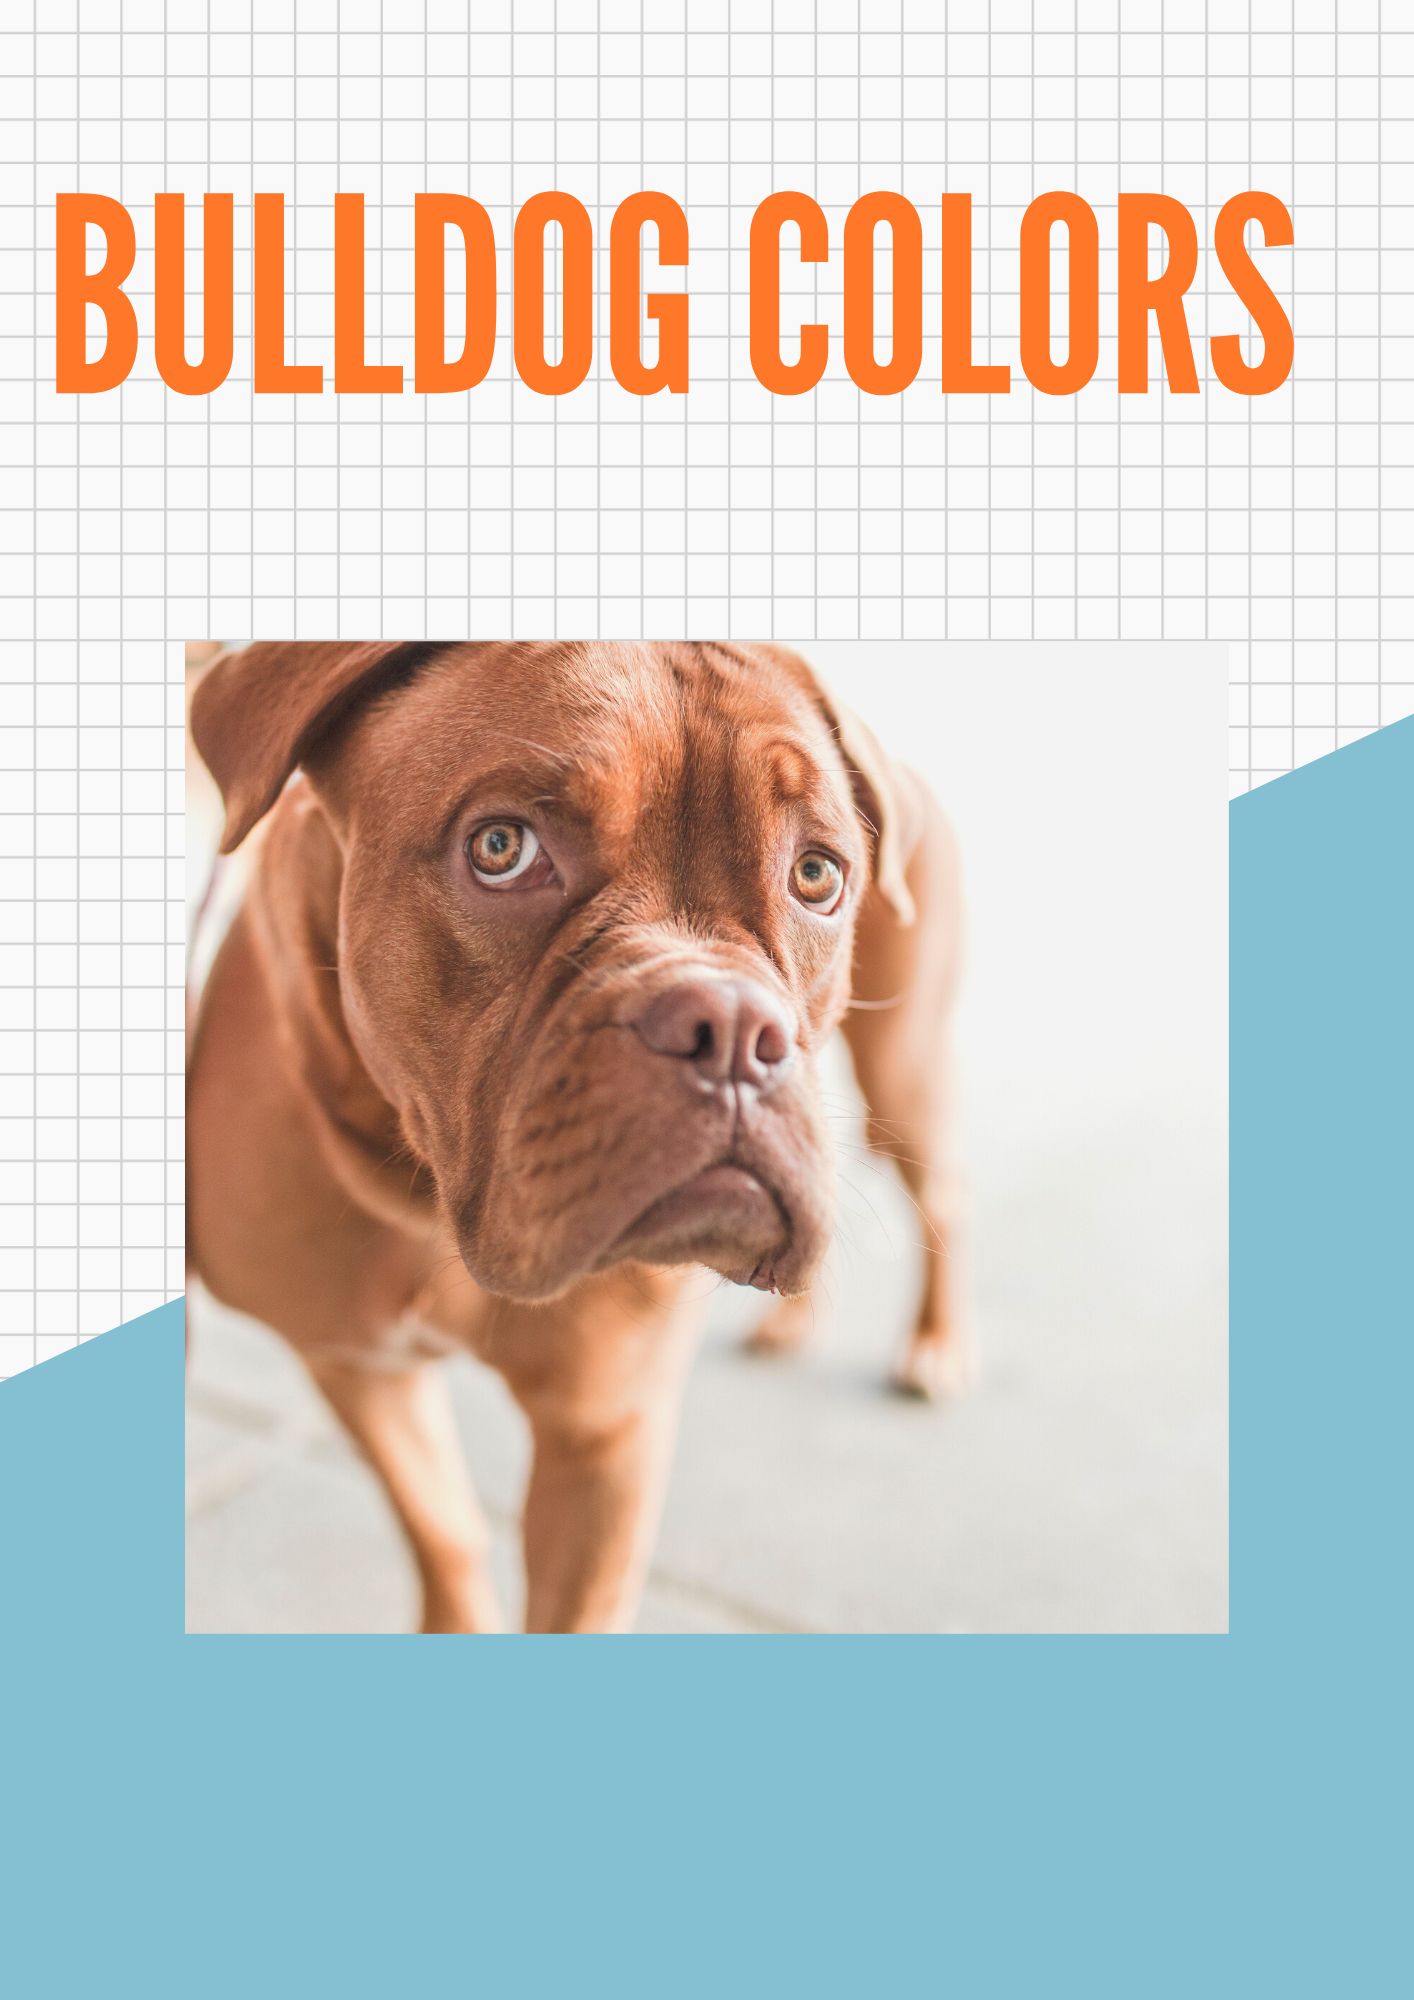 Bulldog colors